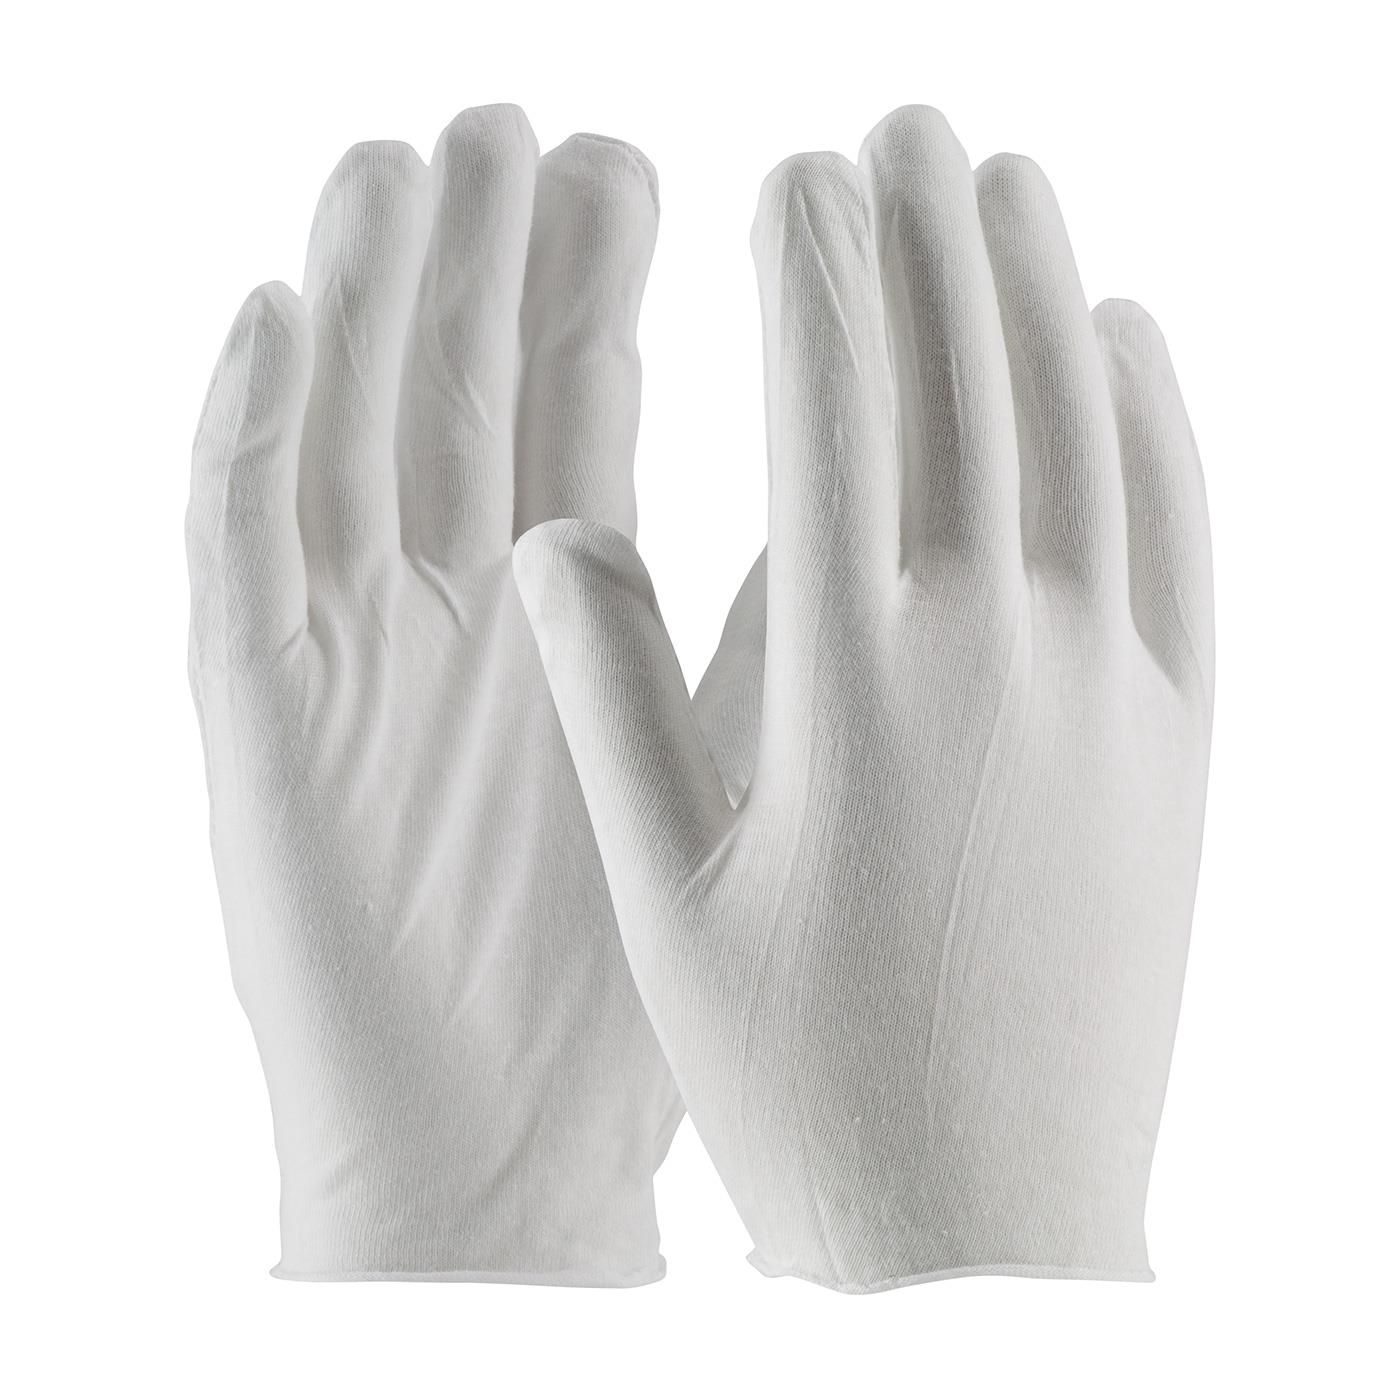 MID WEIGHT LISLE INSPECTORS GLOVE JUMBO - Inspection Gloves